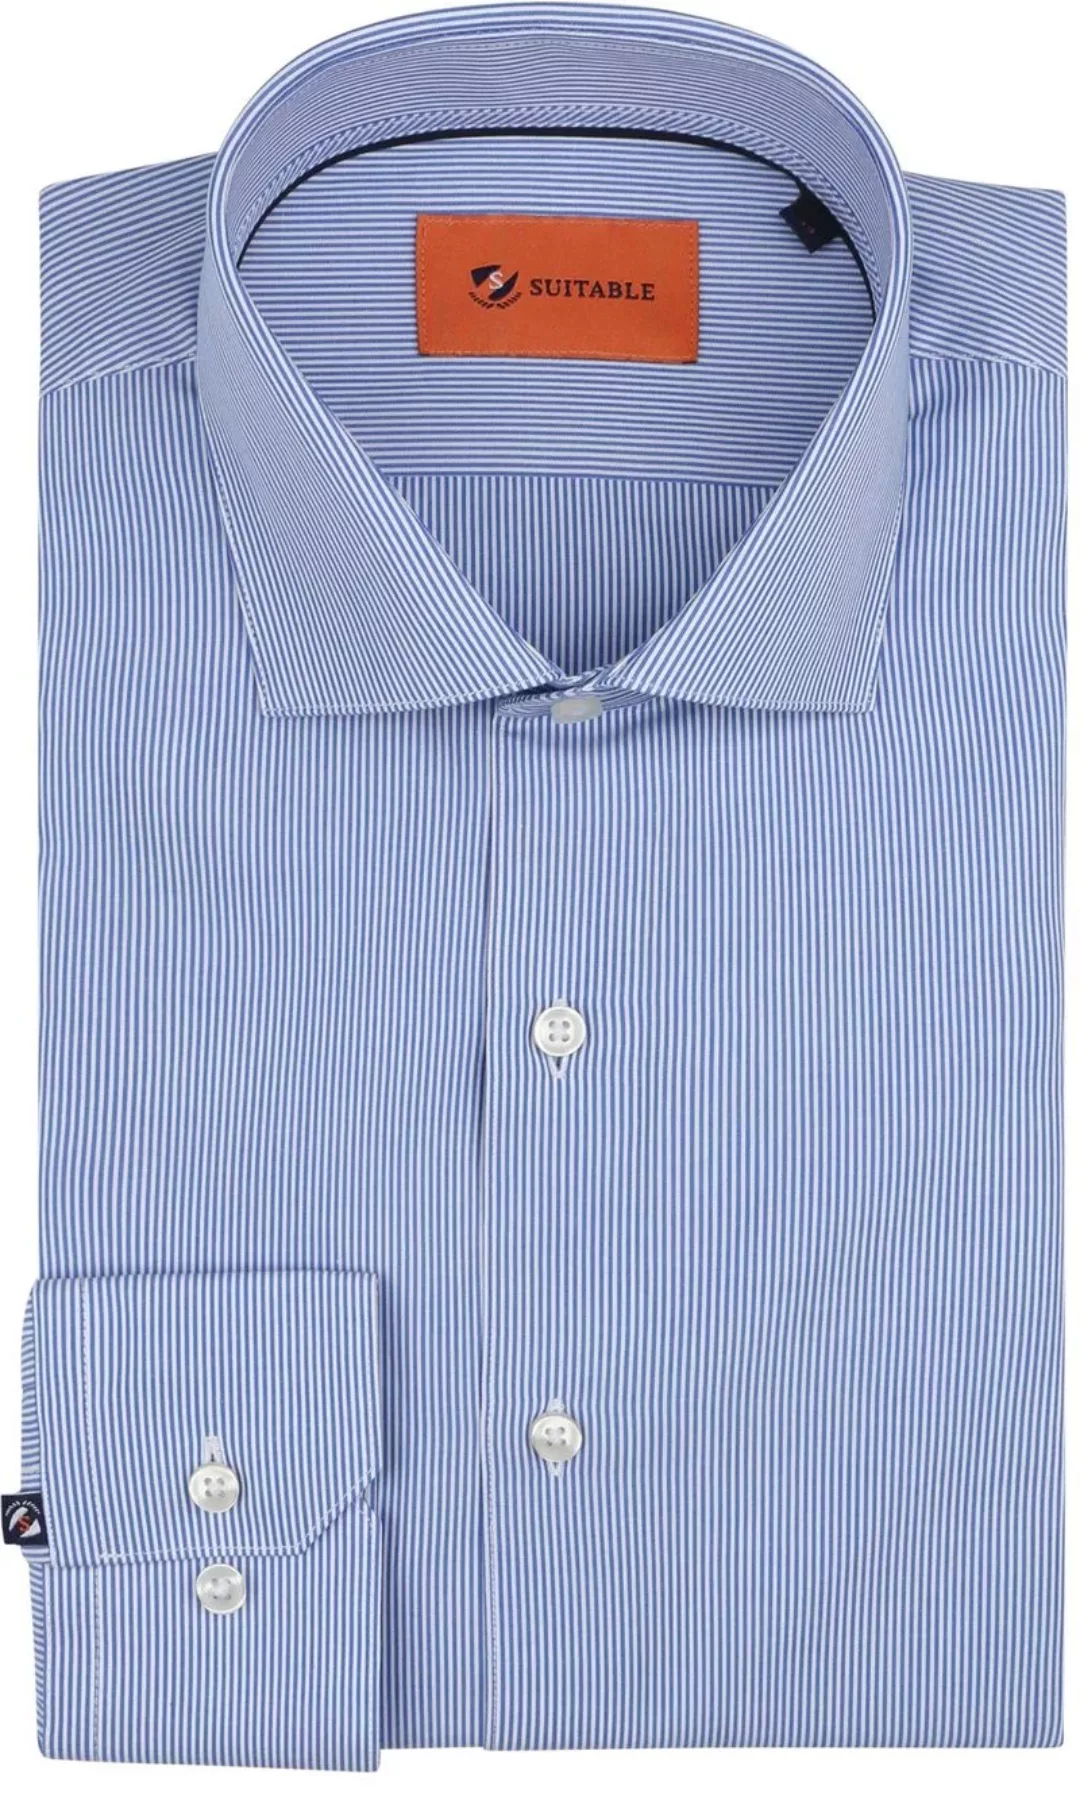 Suitable Hemd Streifen Blau - Größe 41 günstig online kaufen